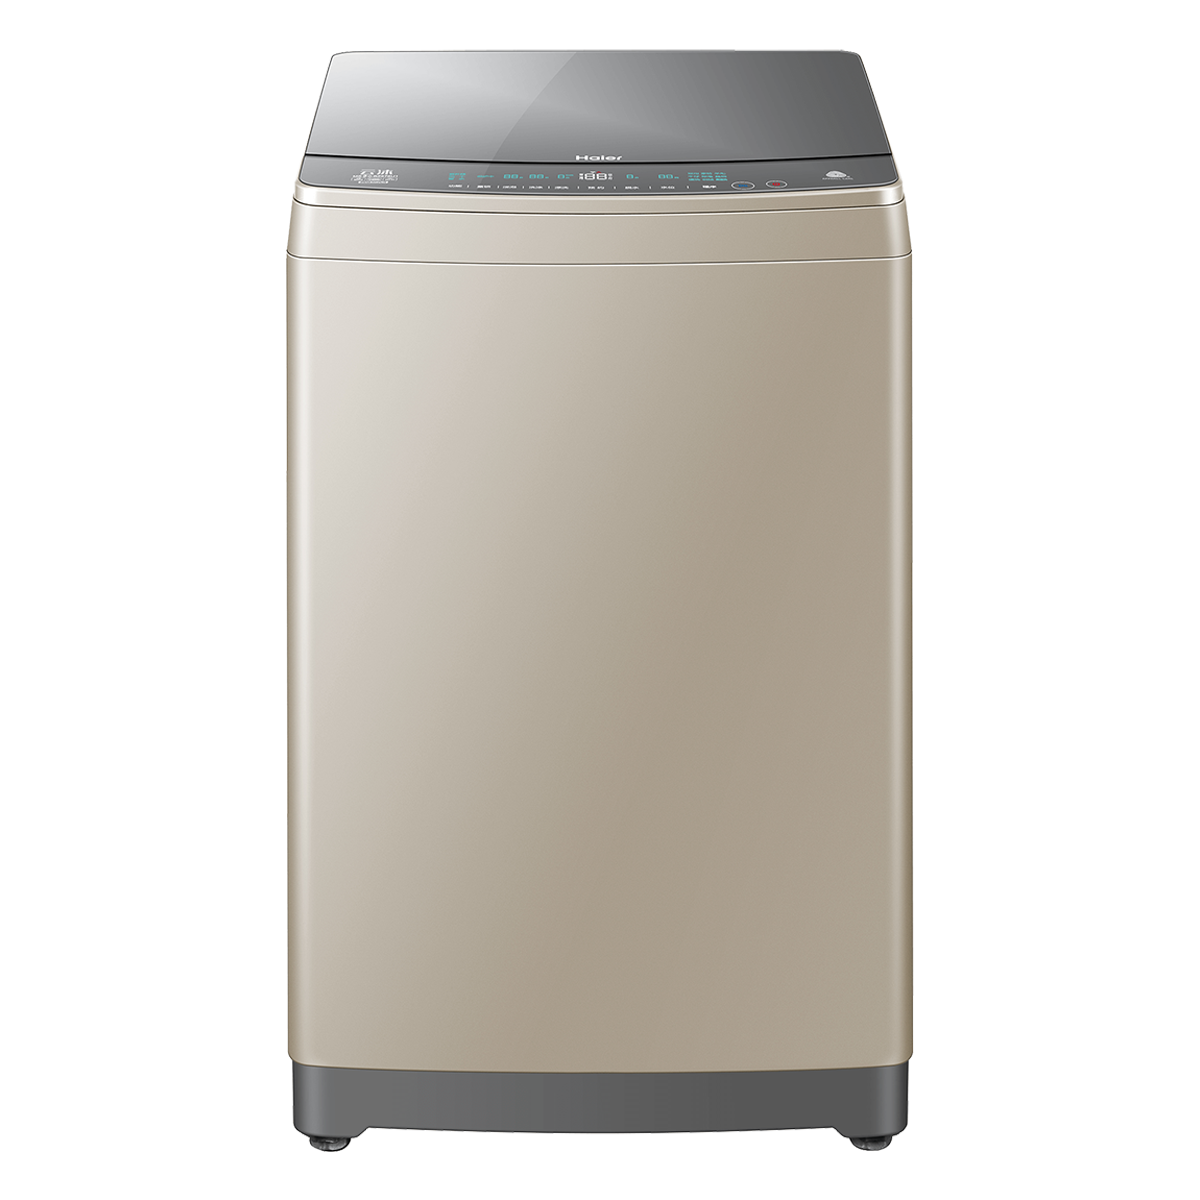 海尔Haier洗衣机 MS90-BZ878U1 说明书